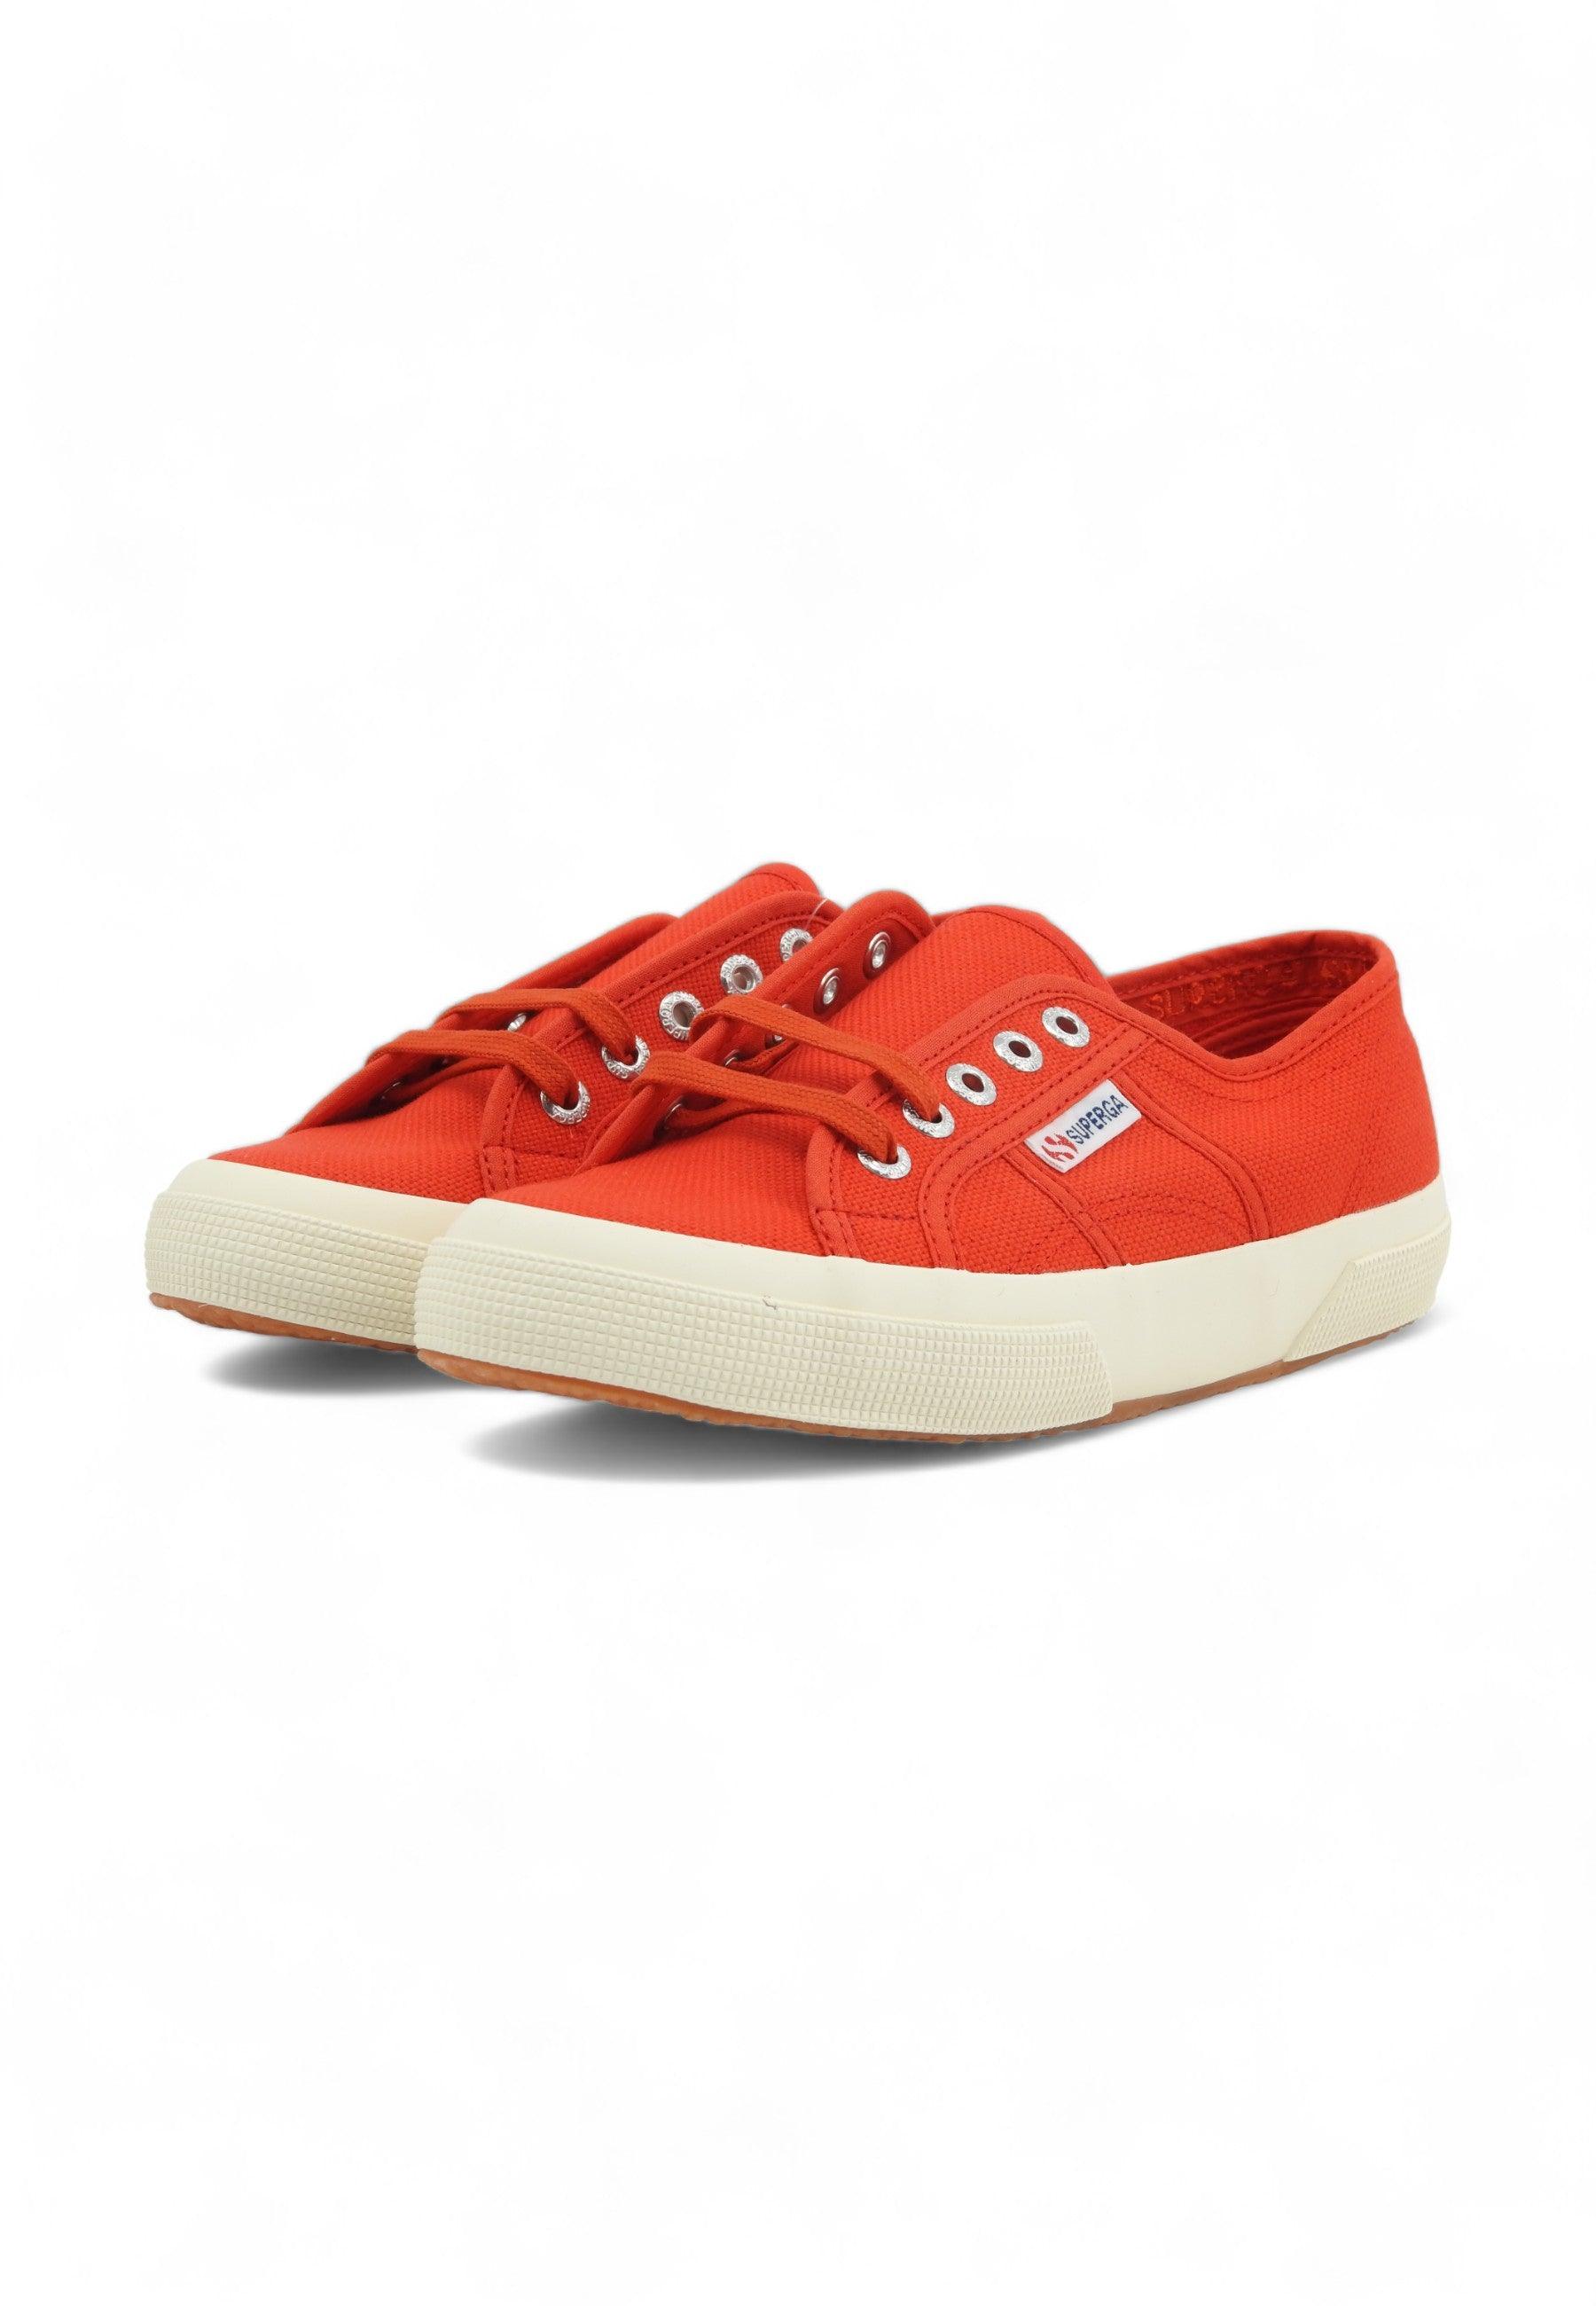 SUPERGA 2750 Cotu Classic Sneaker Donna Red S000010 - Sandrini Calzature e Abbigliamento